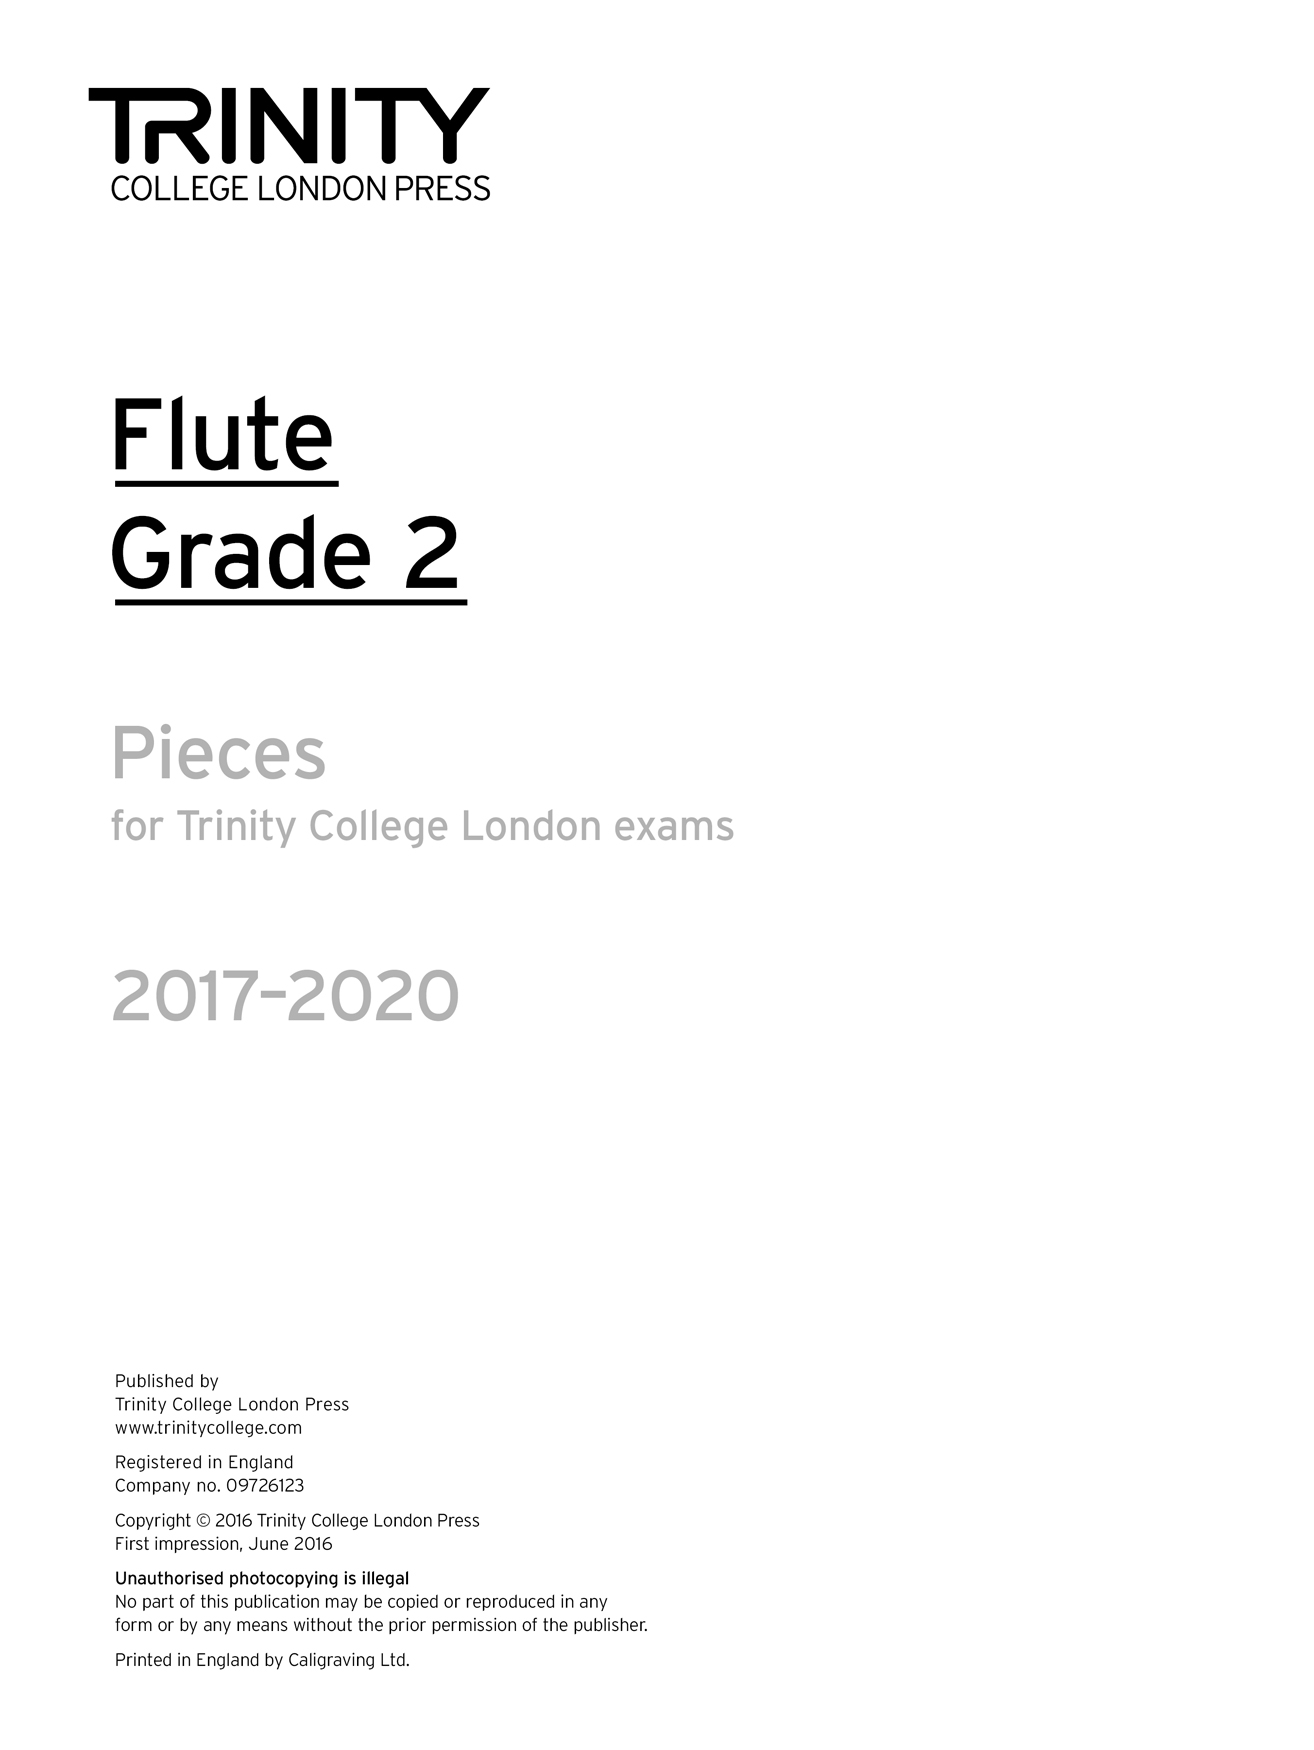 Flute Exam 2017-2020 - Grade 2: Flute: Part